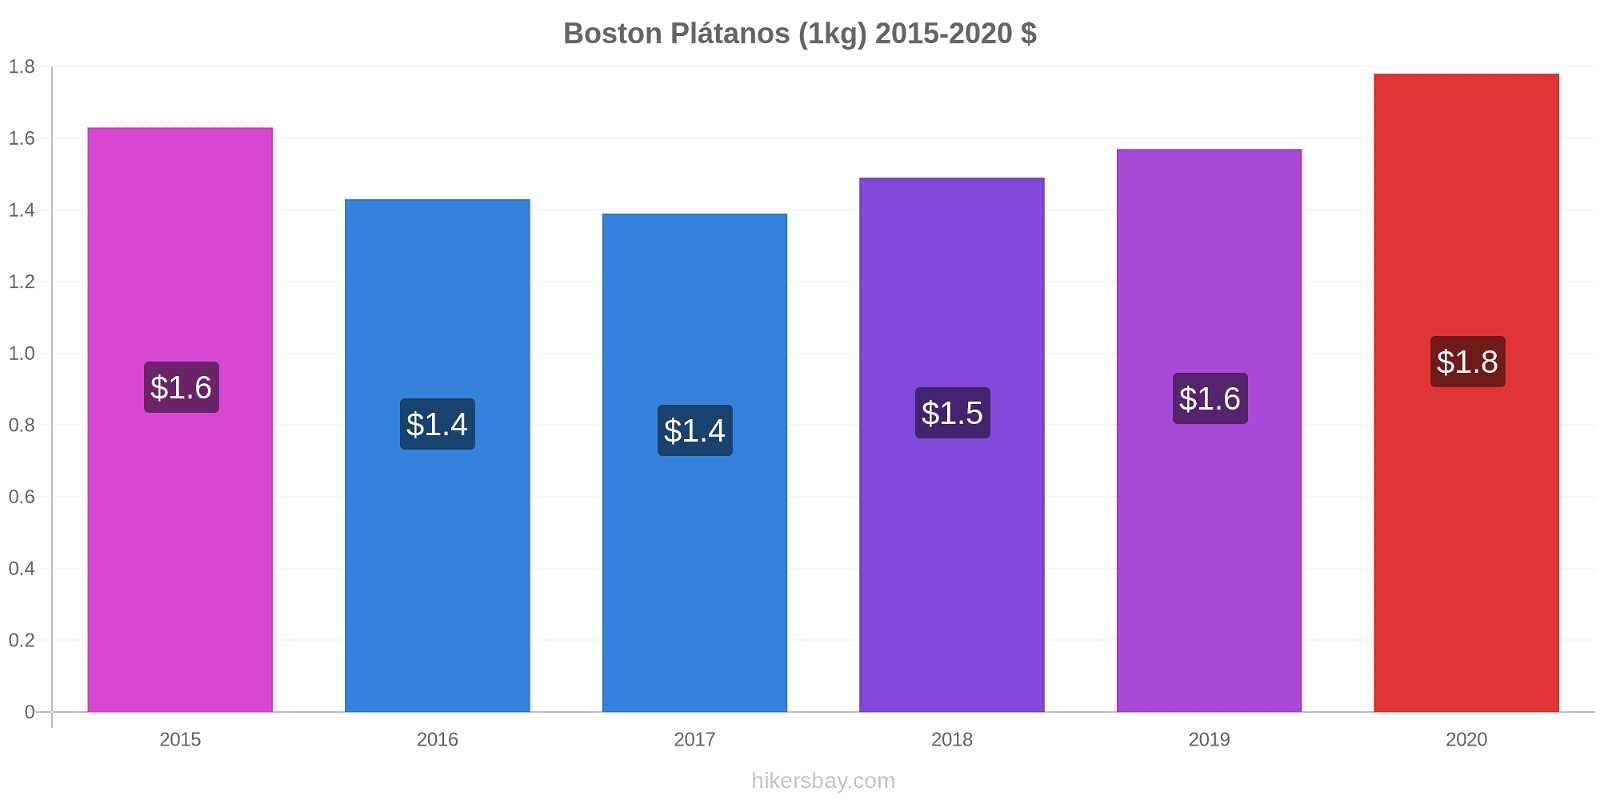 Boston cambios de precios Plátano (1kg) hikersbay.com